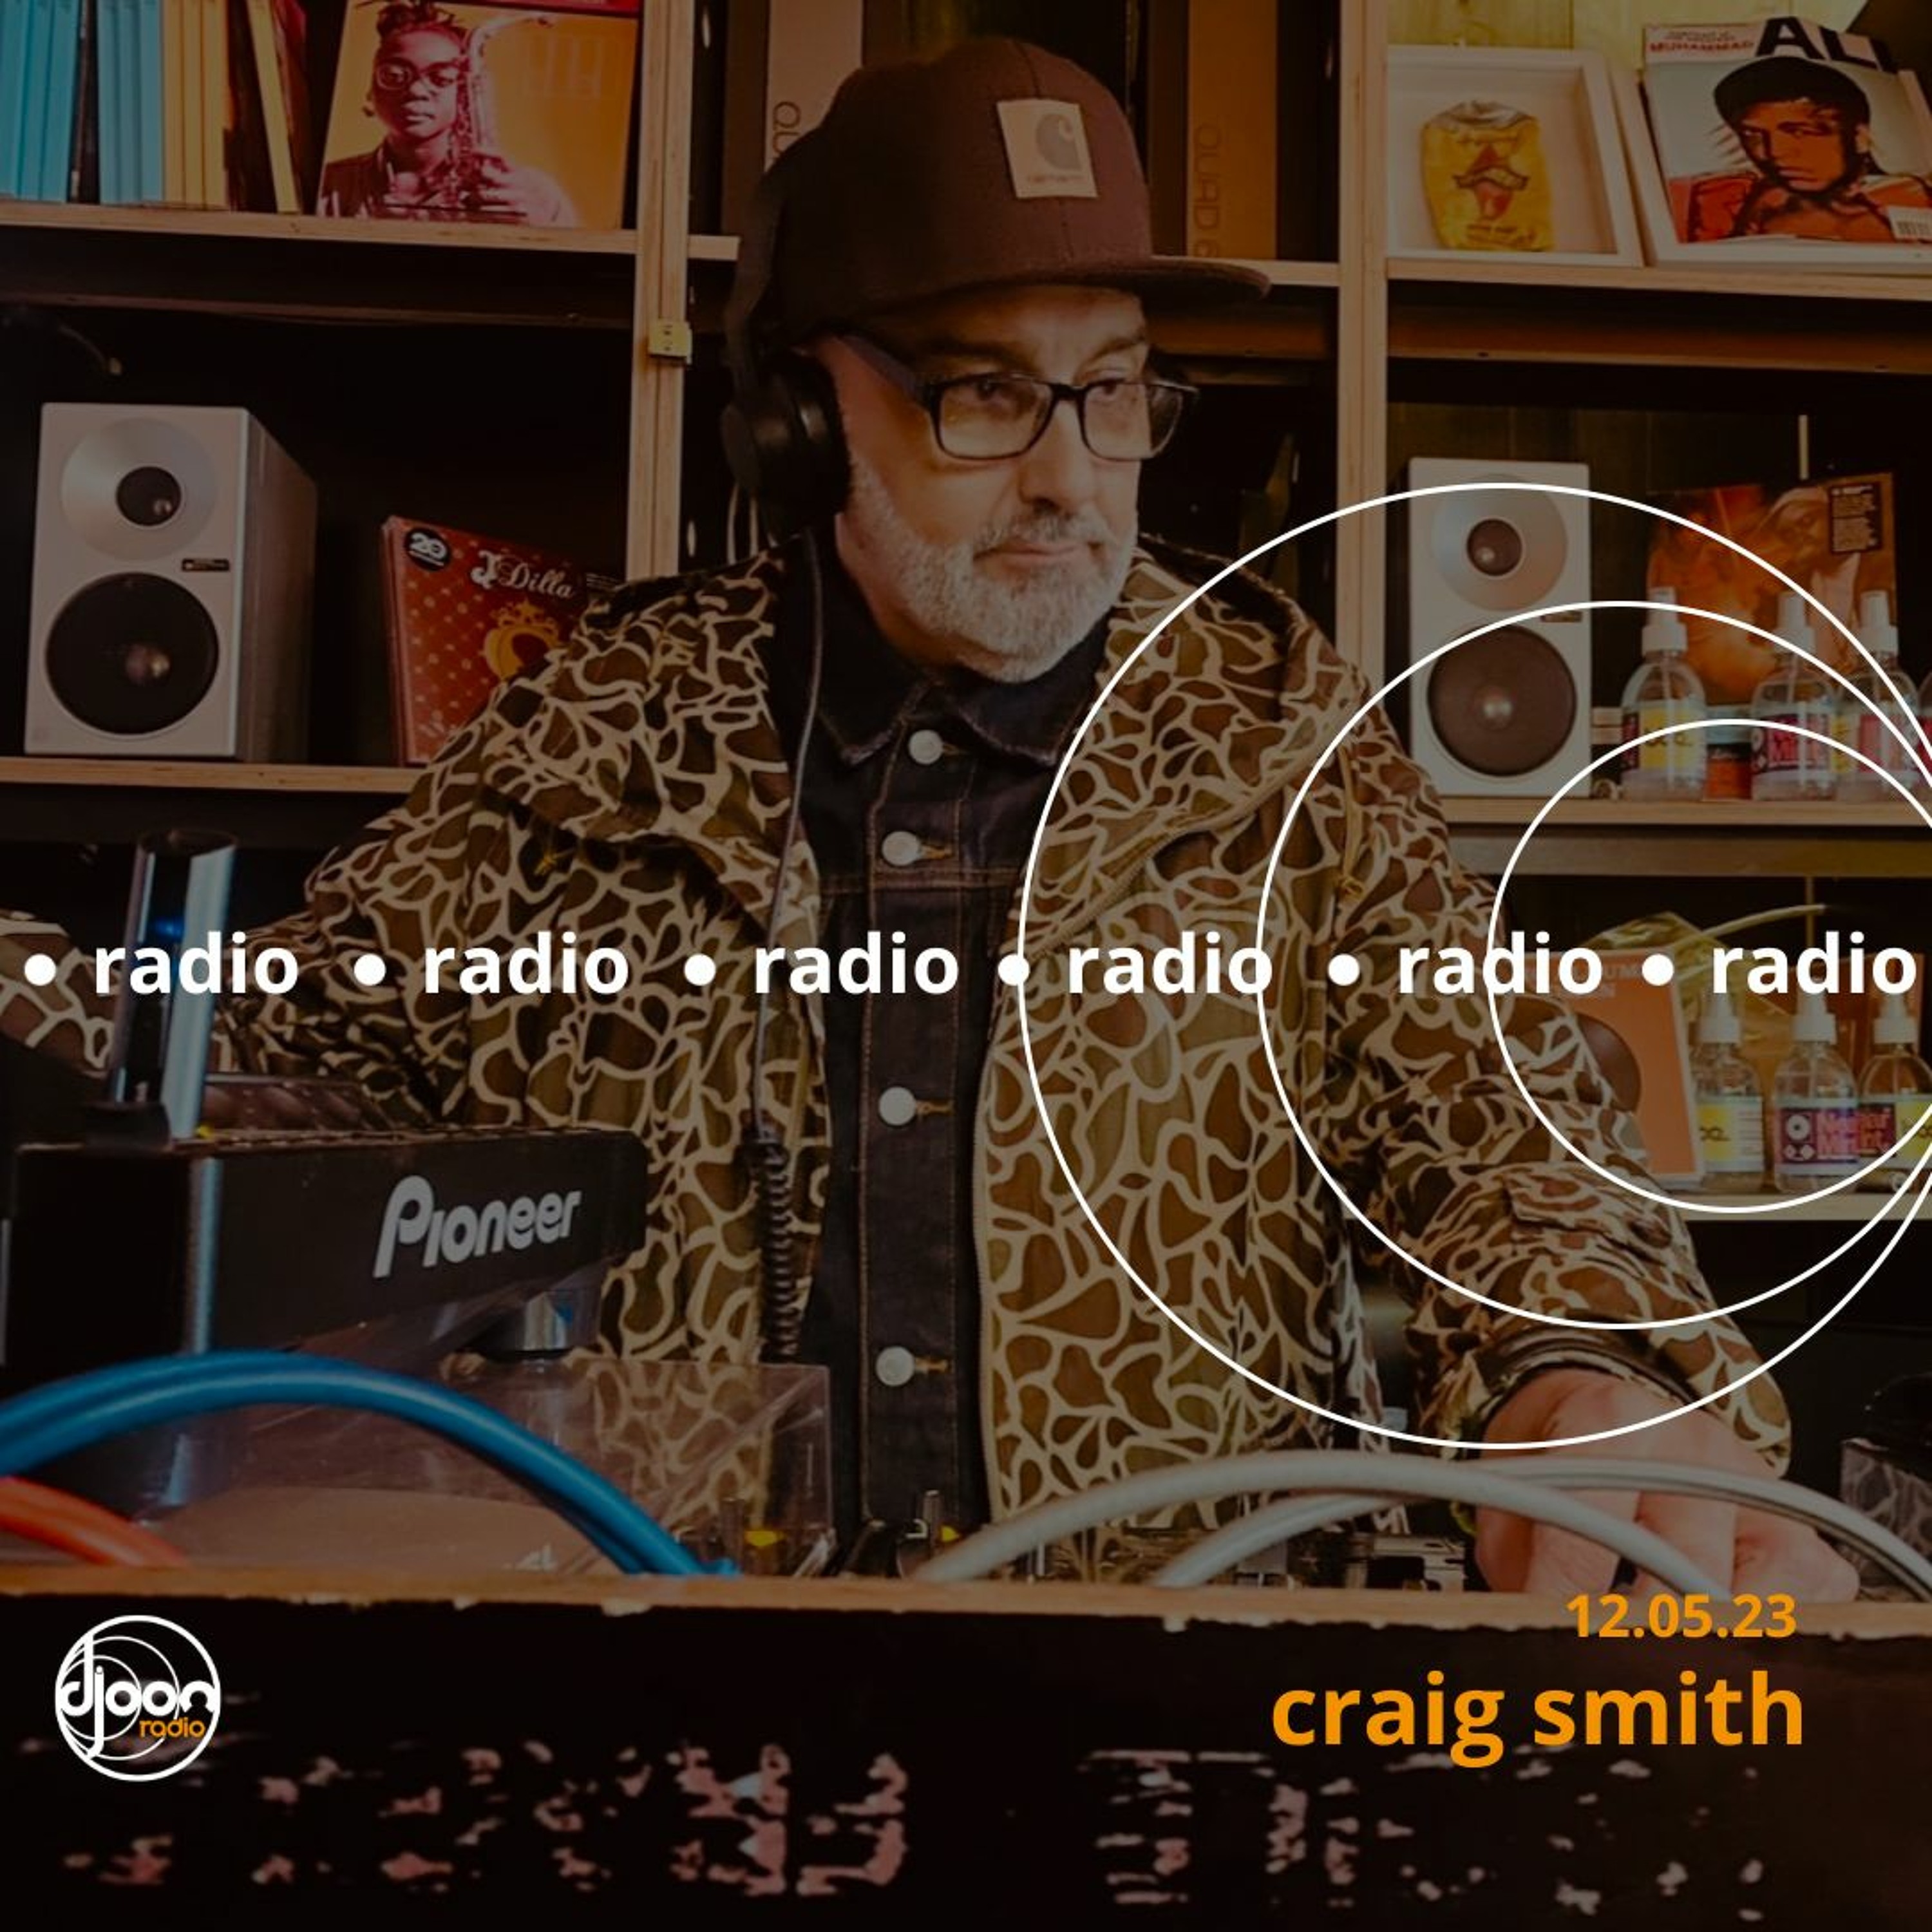 Craig Smith for Djoon Radio 12.05.23